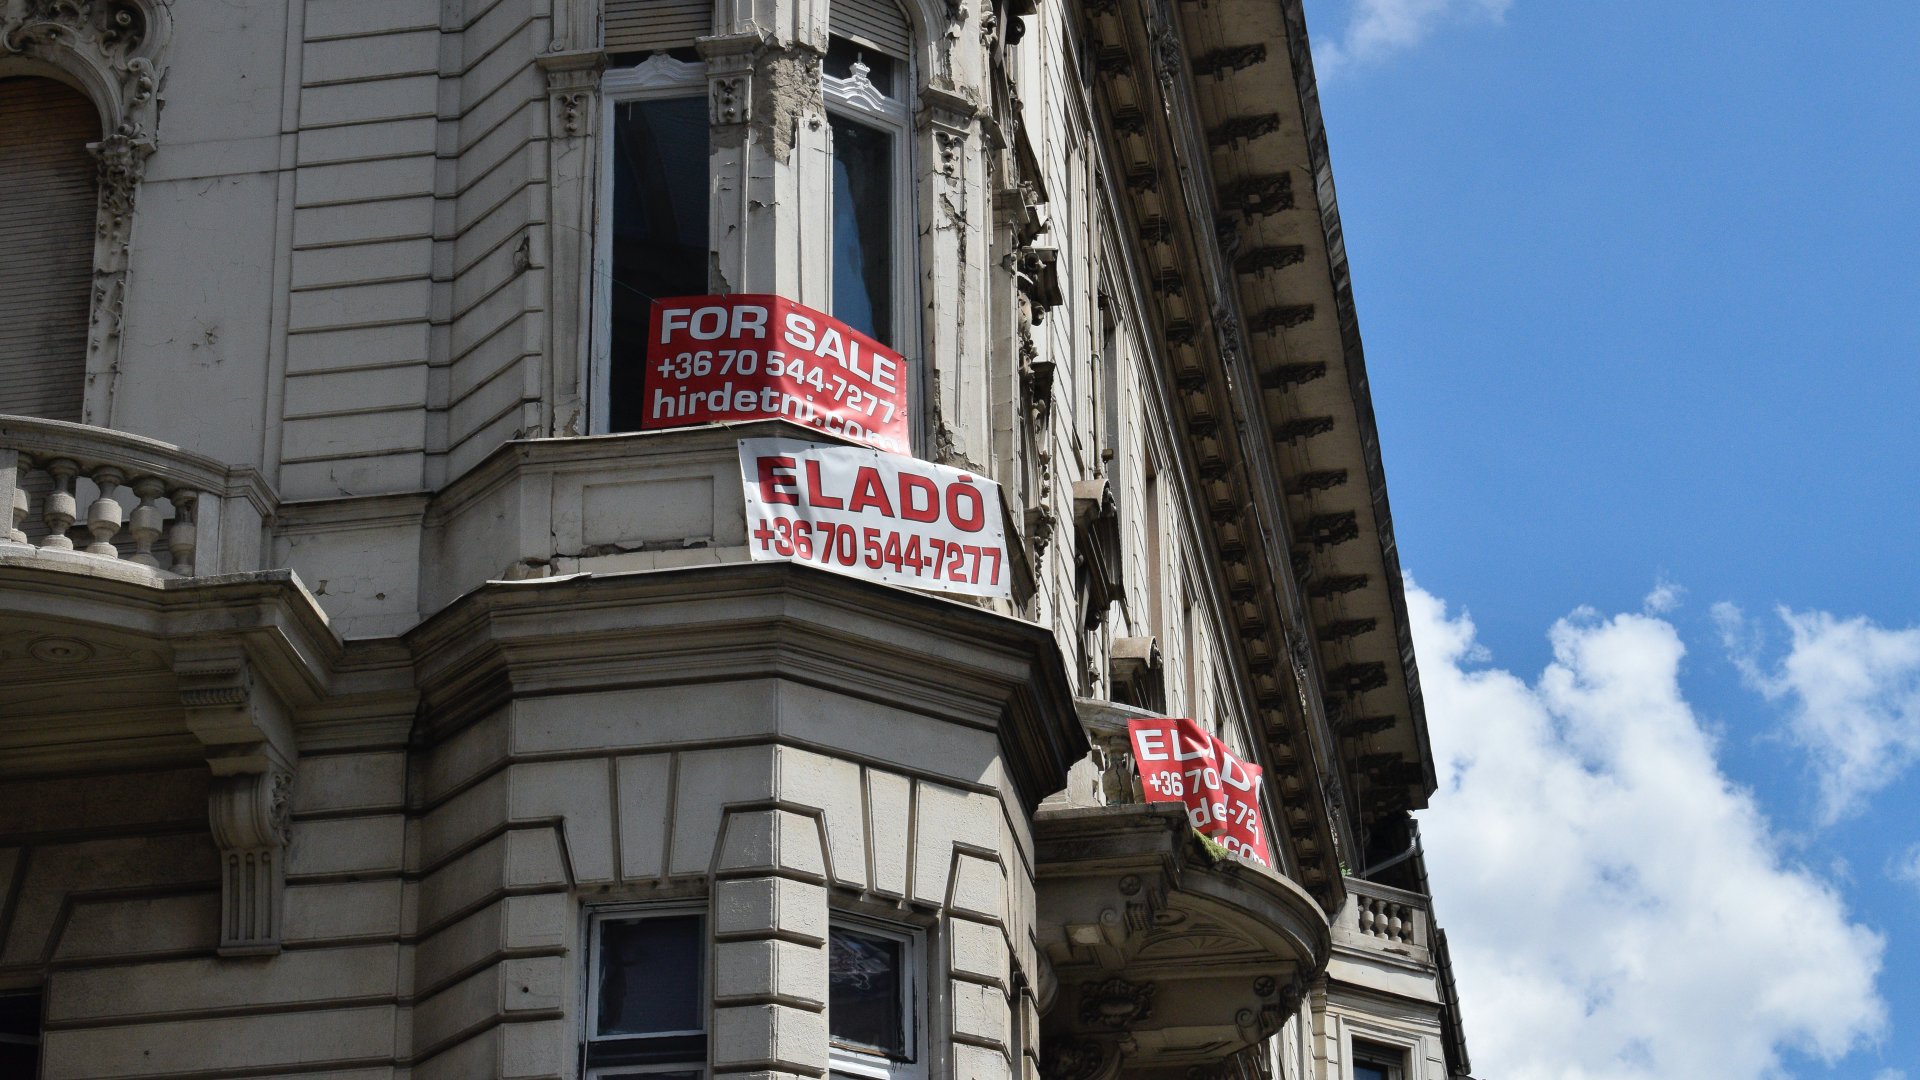 Eladó lakást hirdetõ feliratok a Kossuth Lajos és a Városház utca saroképületén